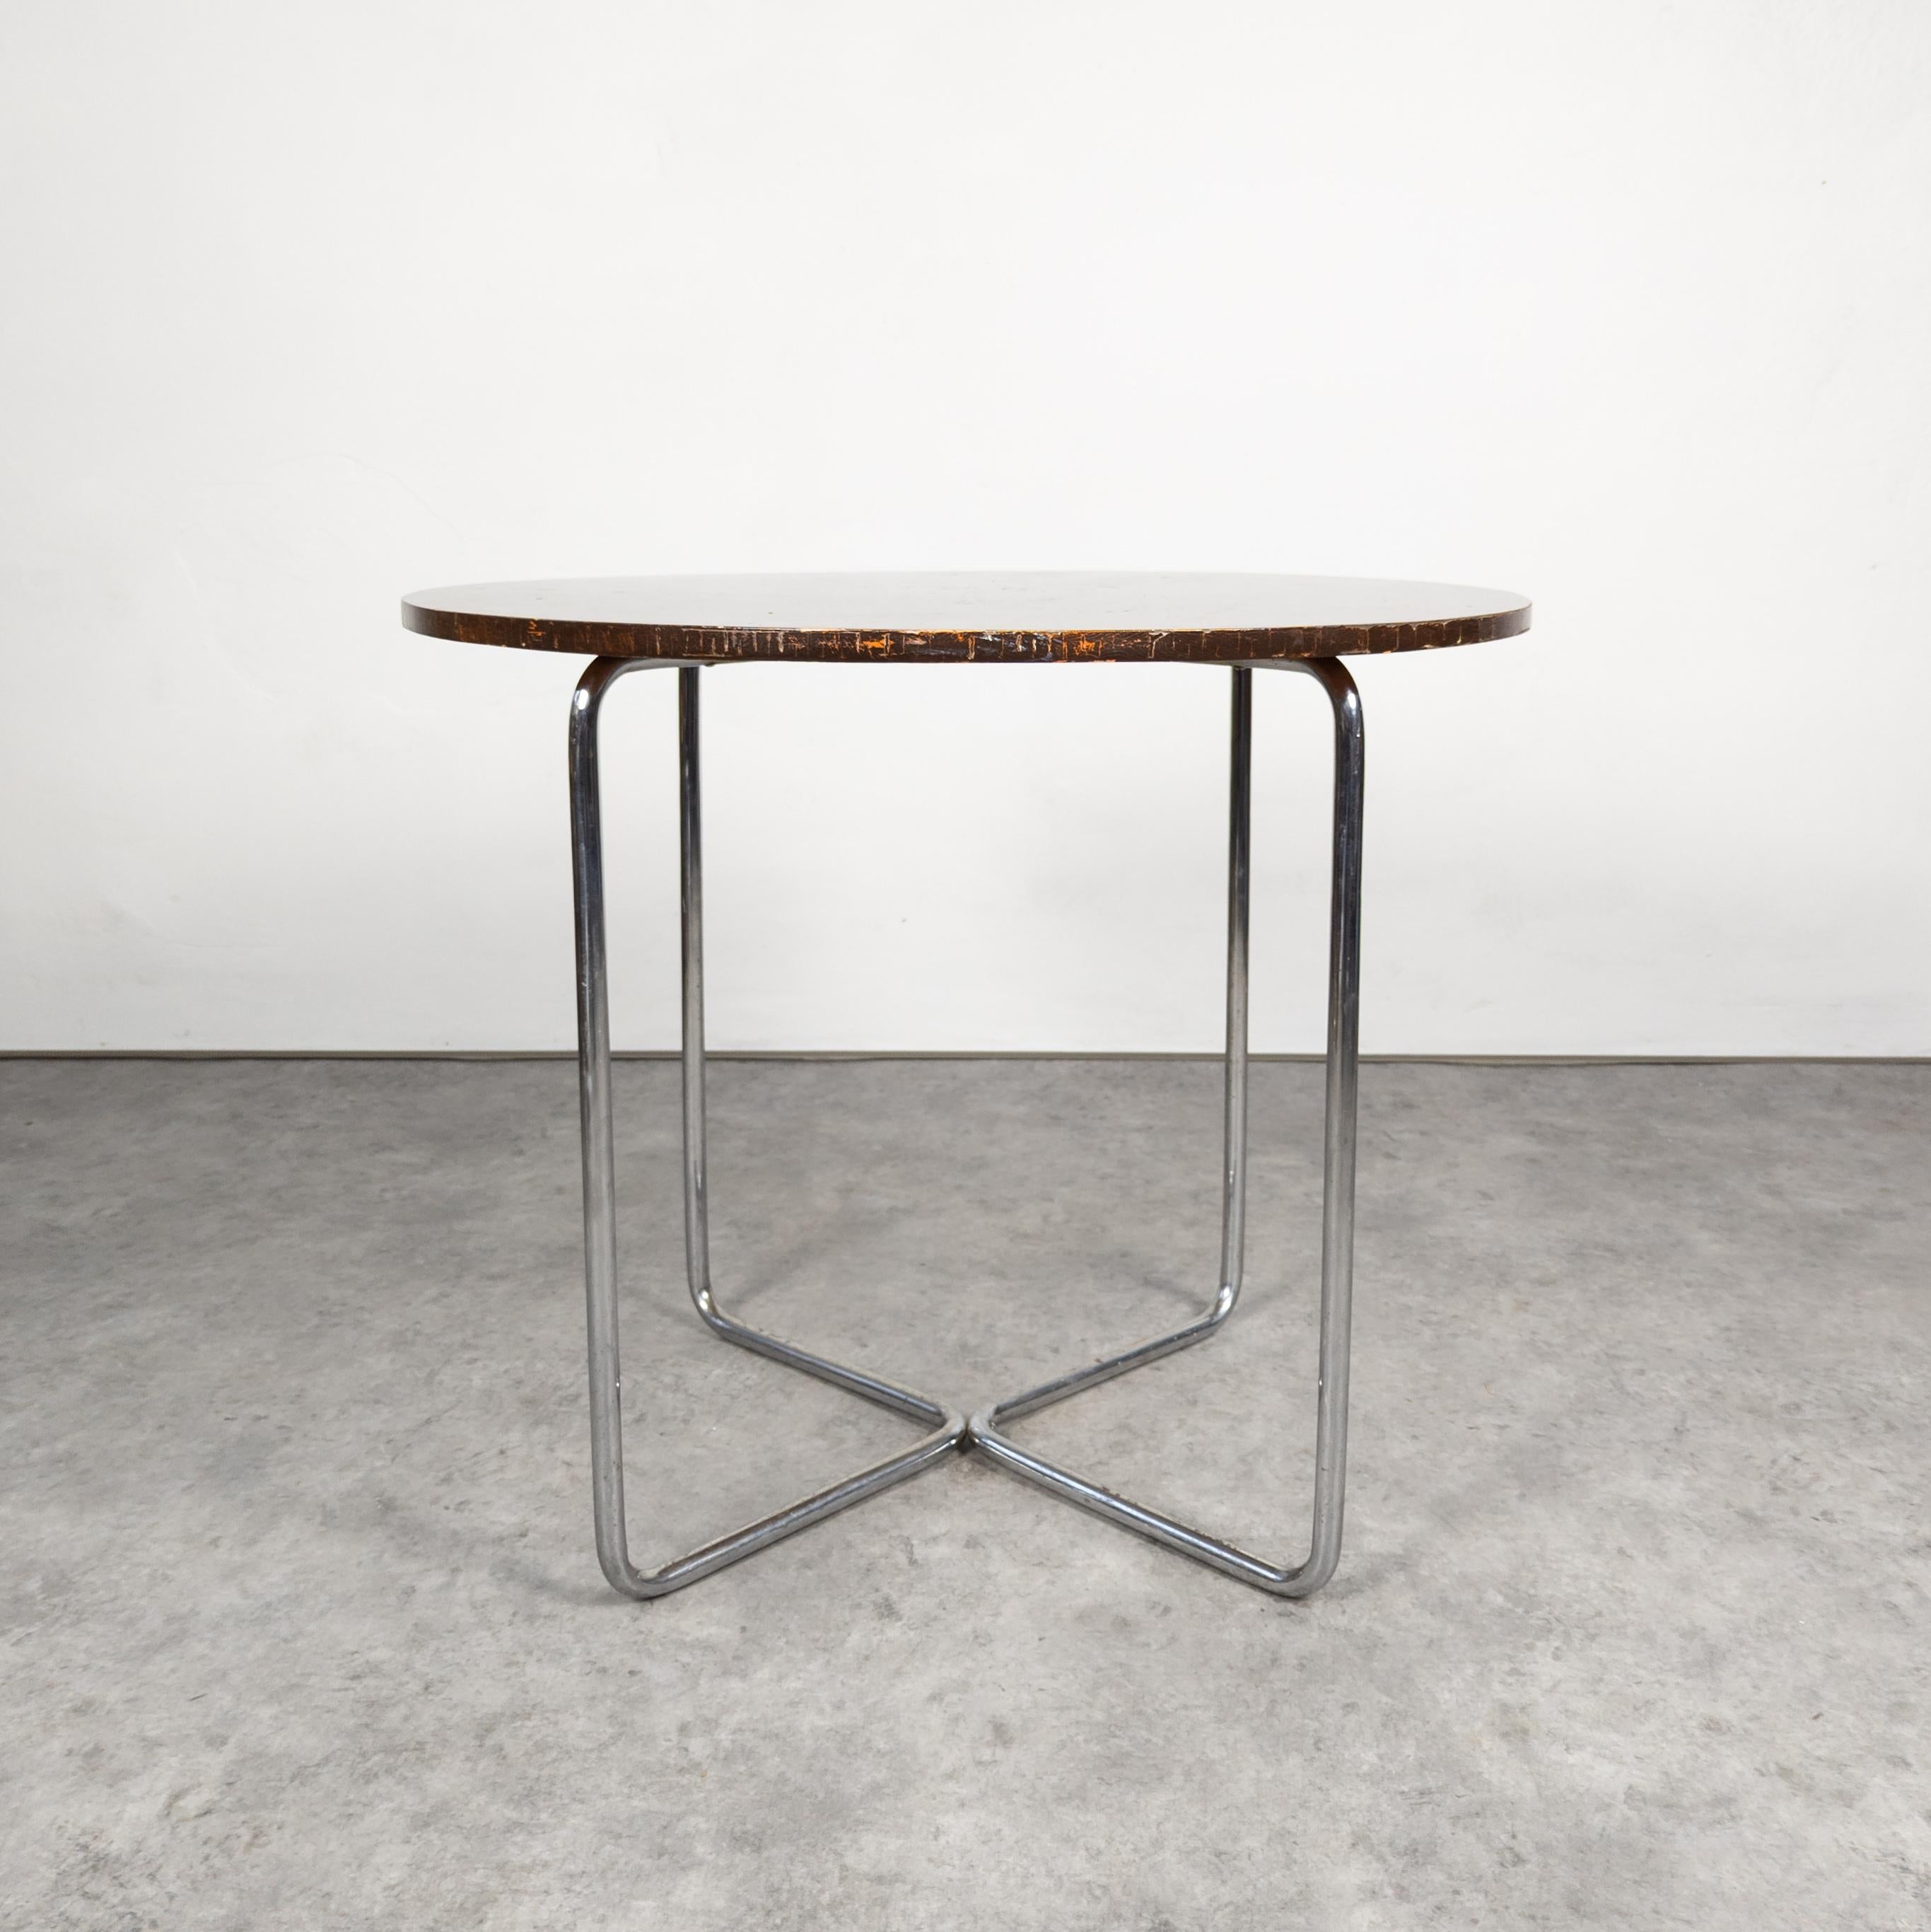 Der Tisch Thonet B 27, entworfen von Marcel Breuer, ist ein minimalistisches und ikonisches Stück. Er besteht aus einem schlanken Stahlrohrgestell mit einer runden Tischplatte aus Glas oder Holz und verkörpert die Bauhaus-Ästhetik, bei der die Form